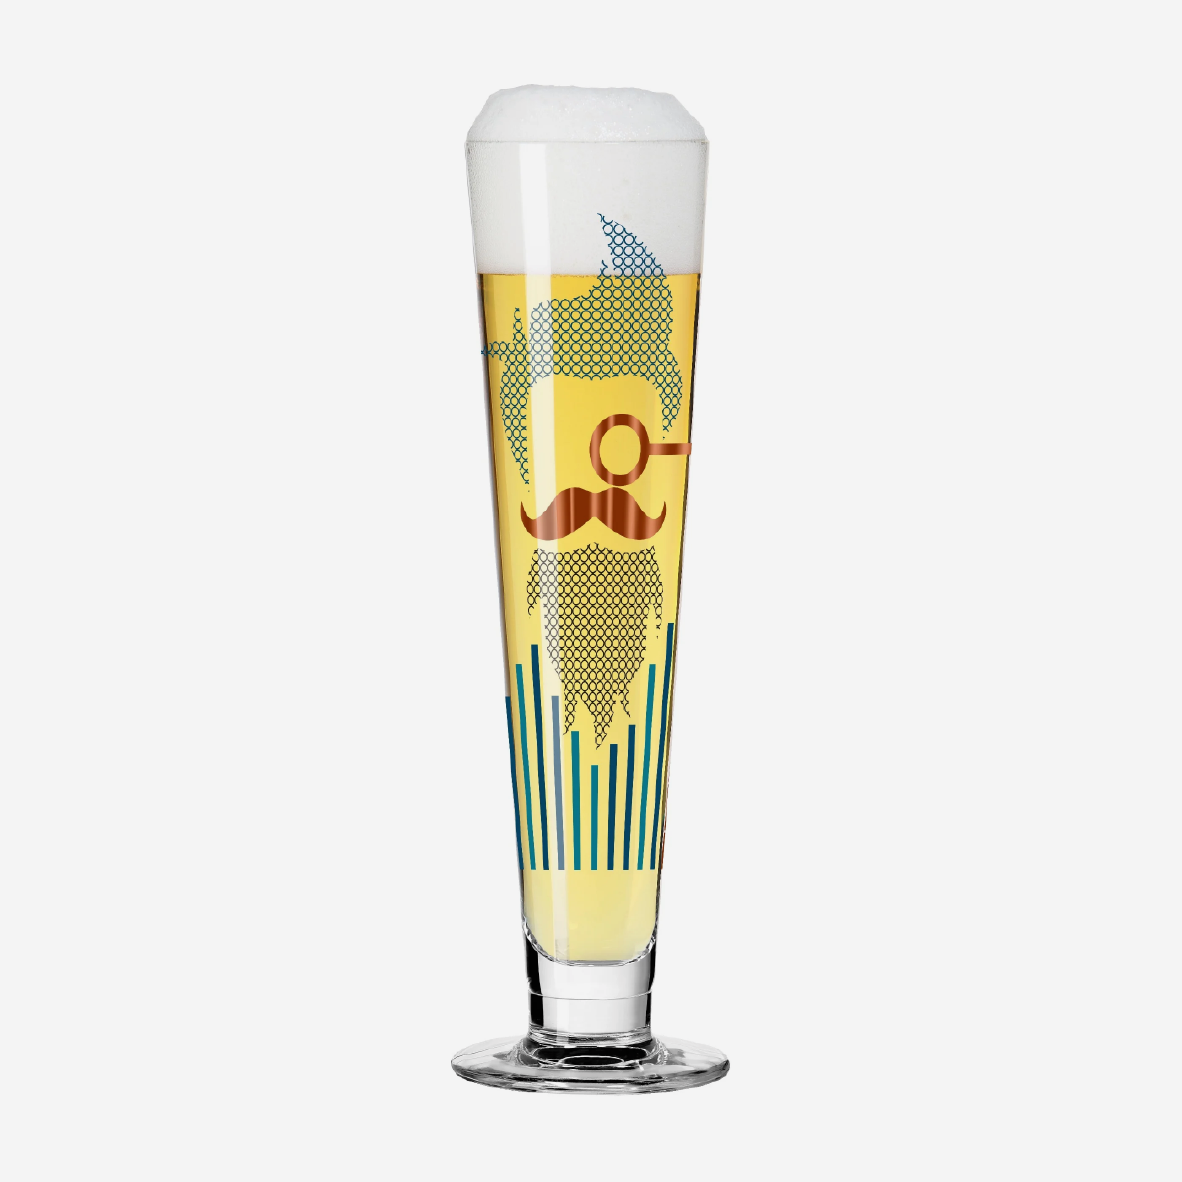 Heldenfest Beer Glass - Kordes